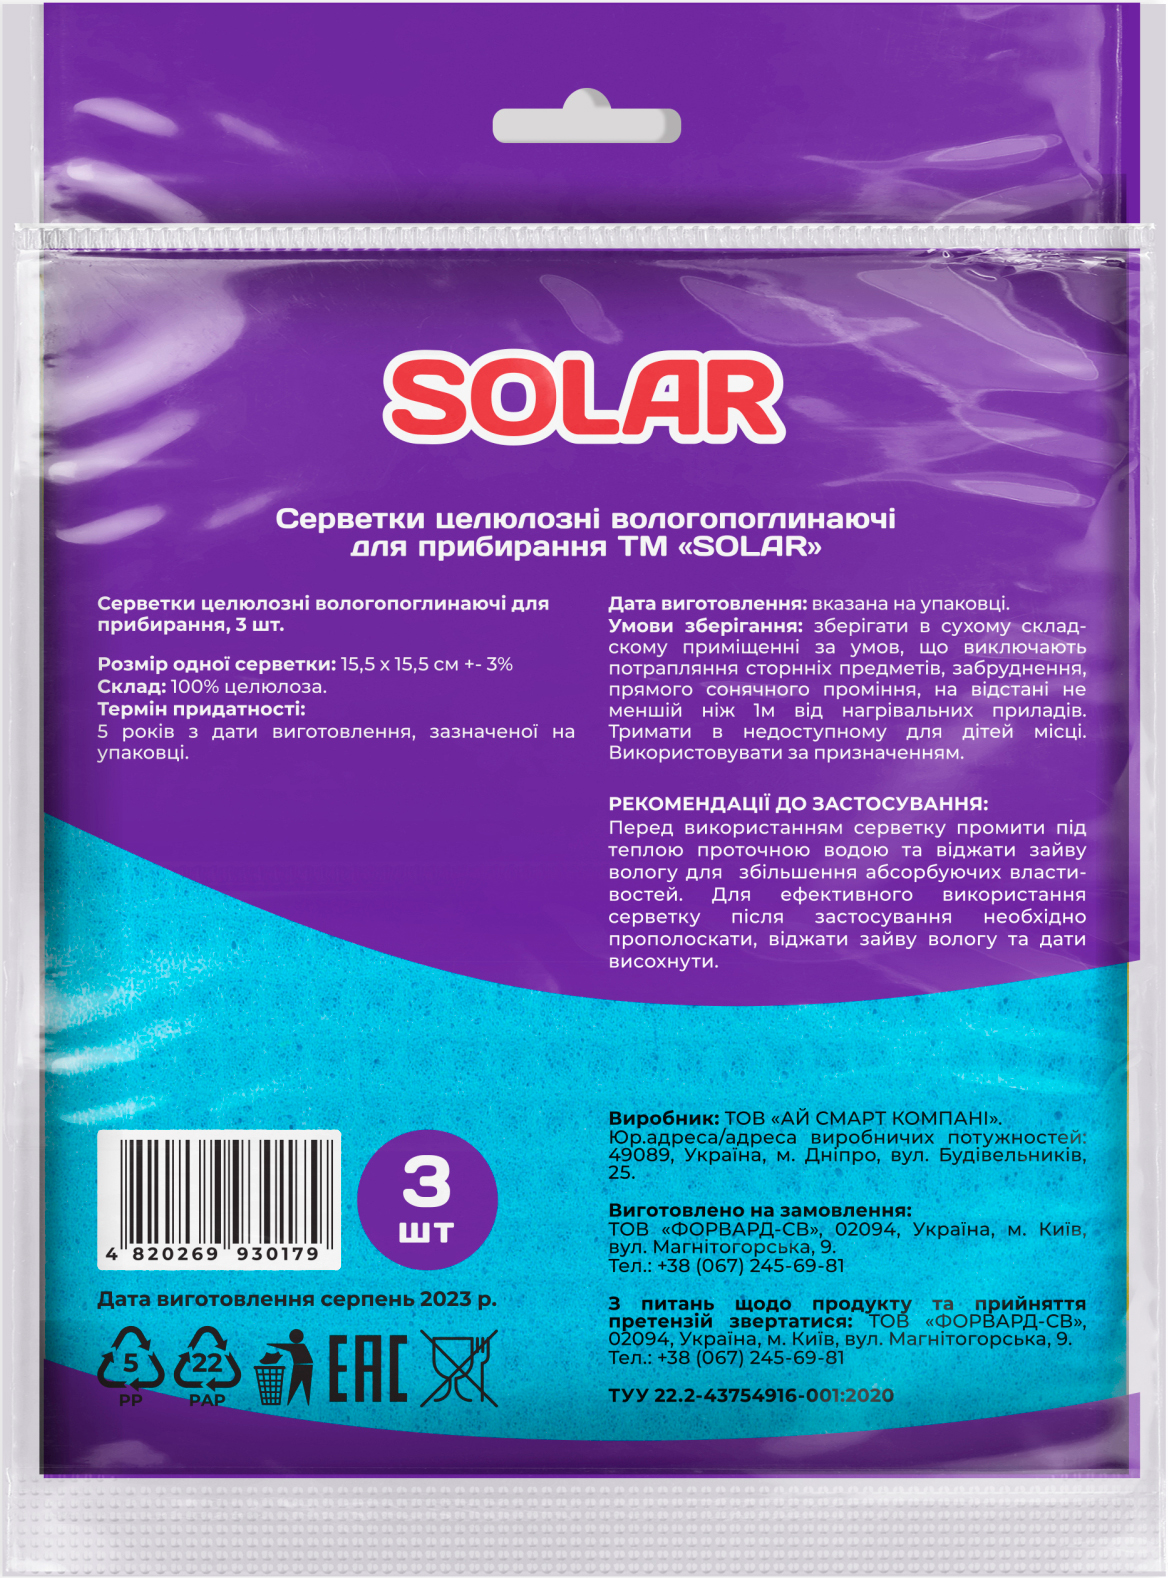 Серветки для прибирання целюлозні Solar вологопоглинаючі 3штфото2